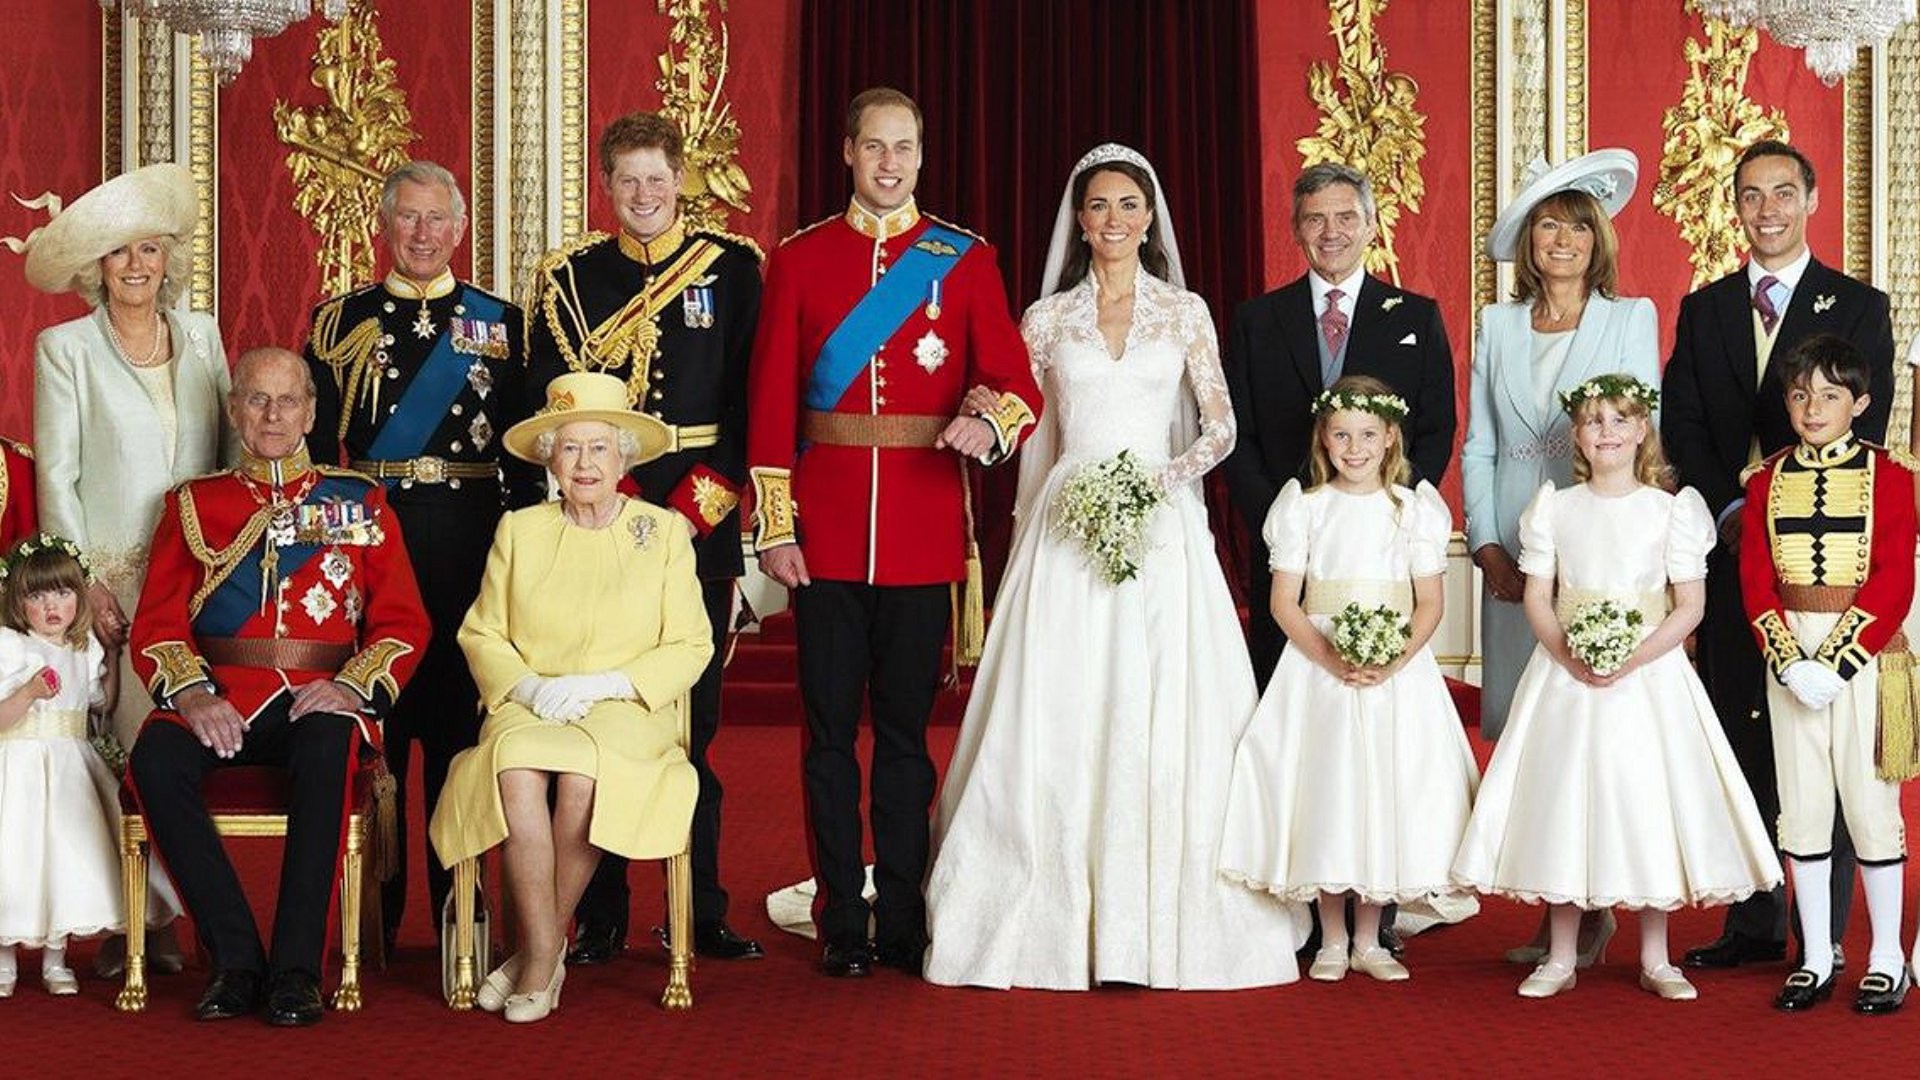 À esquerda, ala mais nobre da família real britânica: Príncipe Philip e sua esposa, a rainha Elizabeth II (sentados), duquesa Camilla e seu marido, o príncipe Charles, príncipe Harry e príncipe William e sua esposa, a duquesa Kate Middleton (Foto: Buckingham Palace)